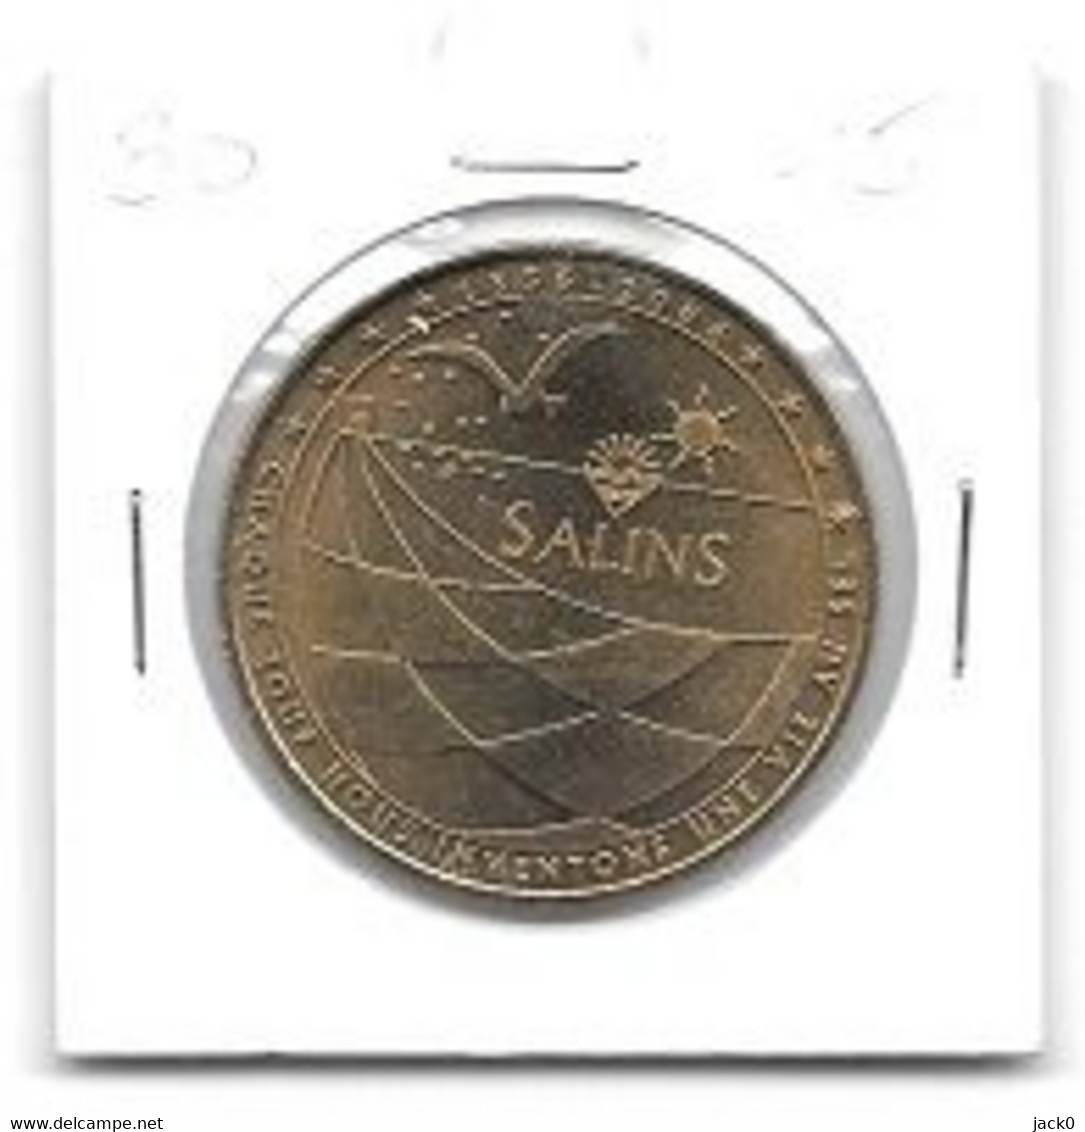 Médaille Touristique  Monnaie De Paris  2006, SALINS,1856-2006, CHAQUE JOUR NOUS INVENTONS UNE VIE AU SEL - 2006